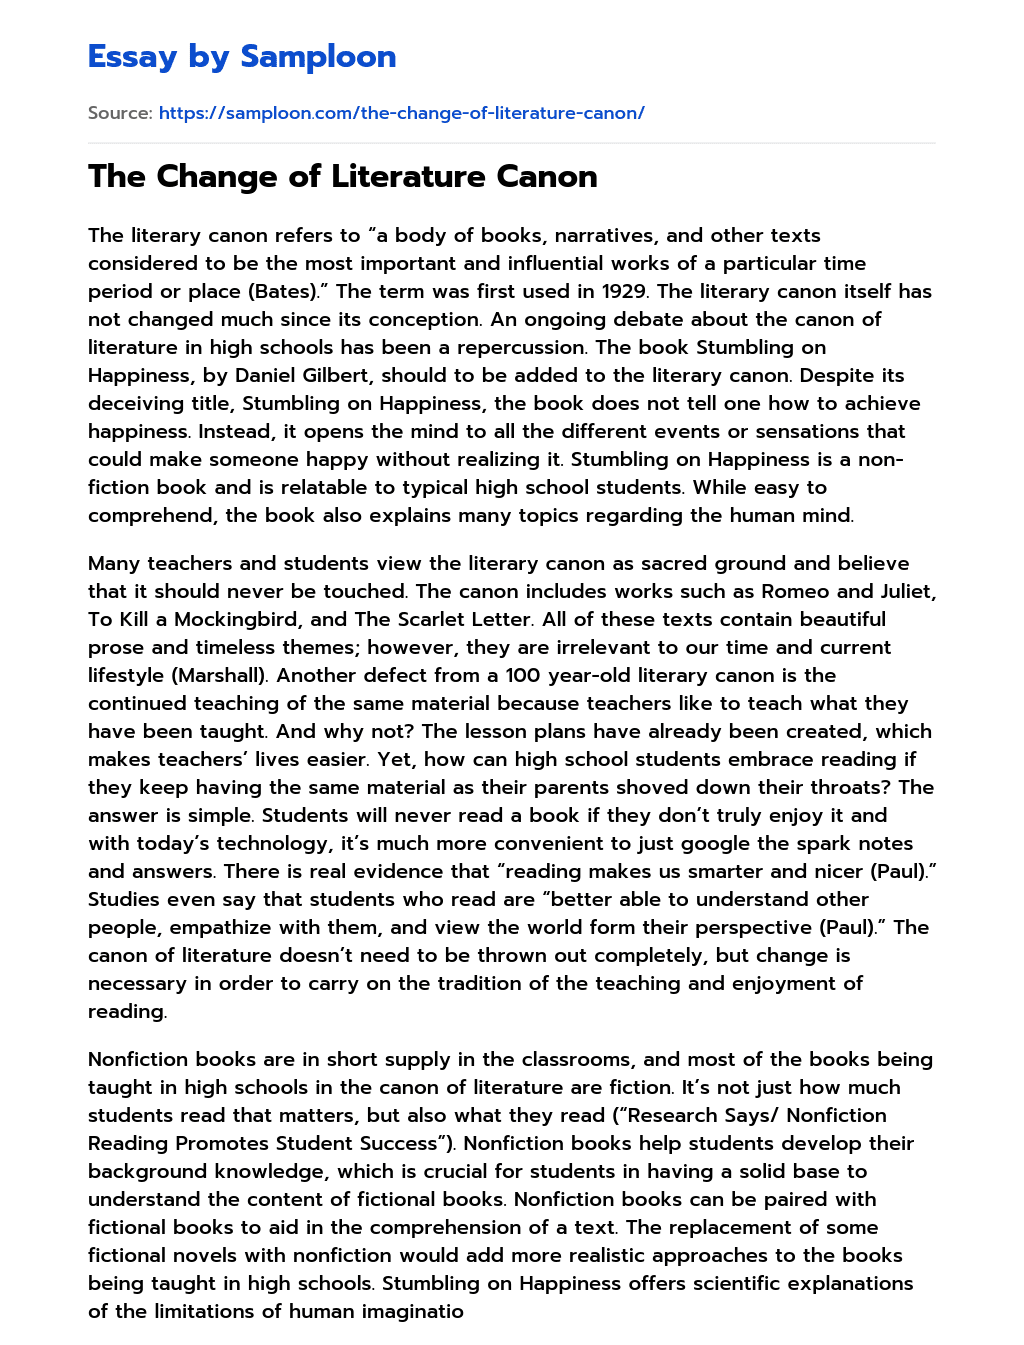 The Change of Literature Canon essay